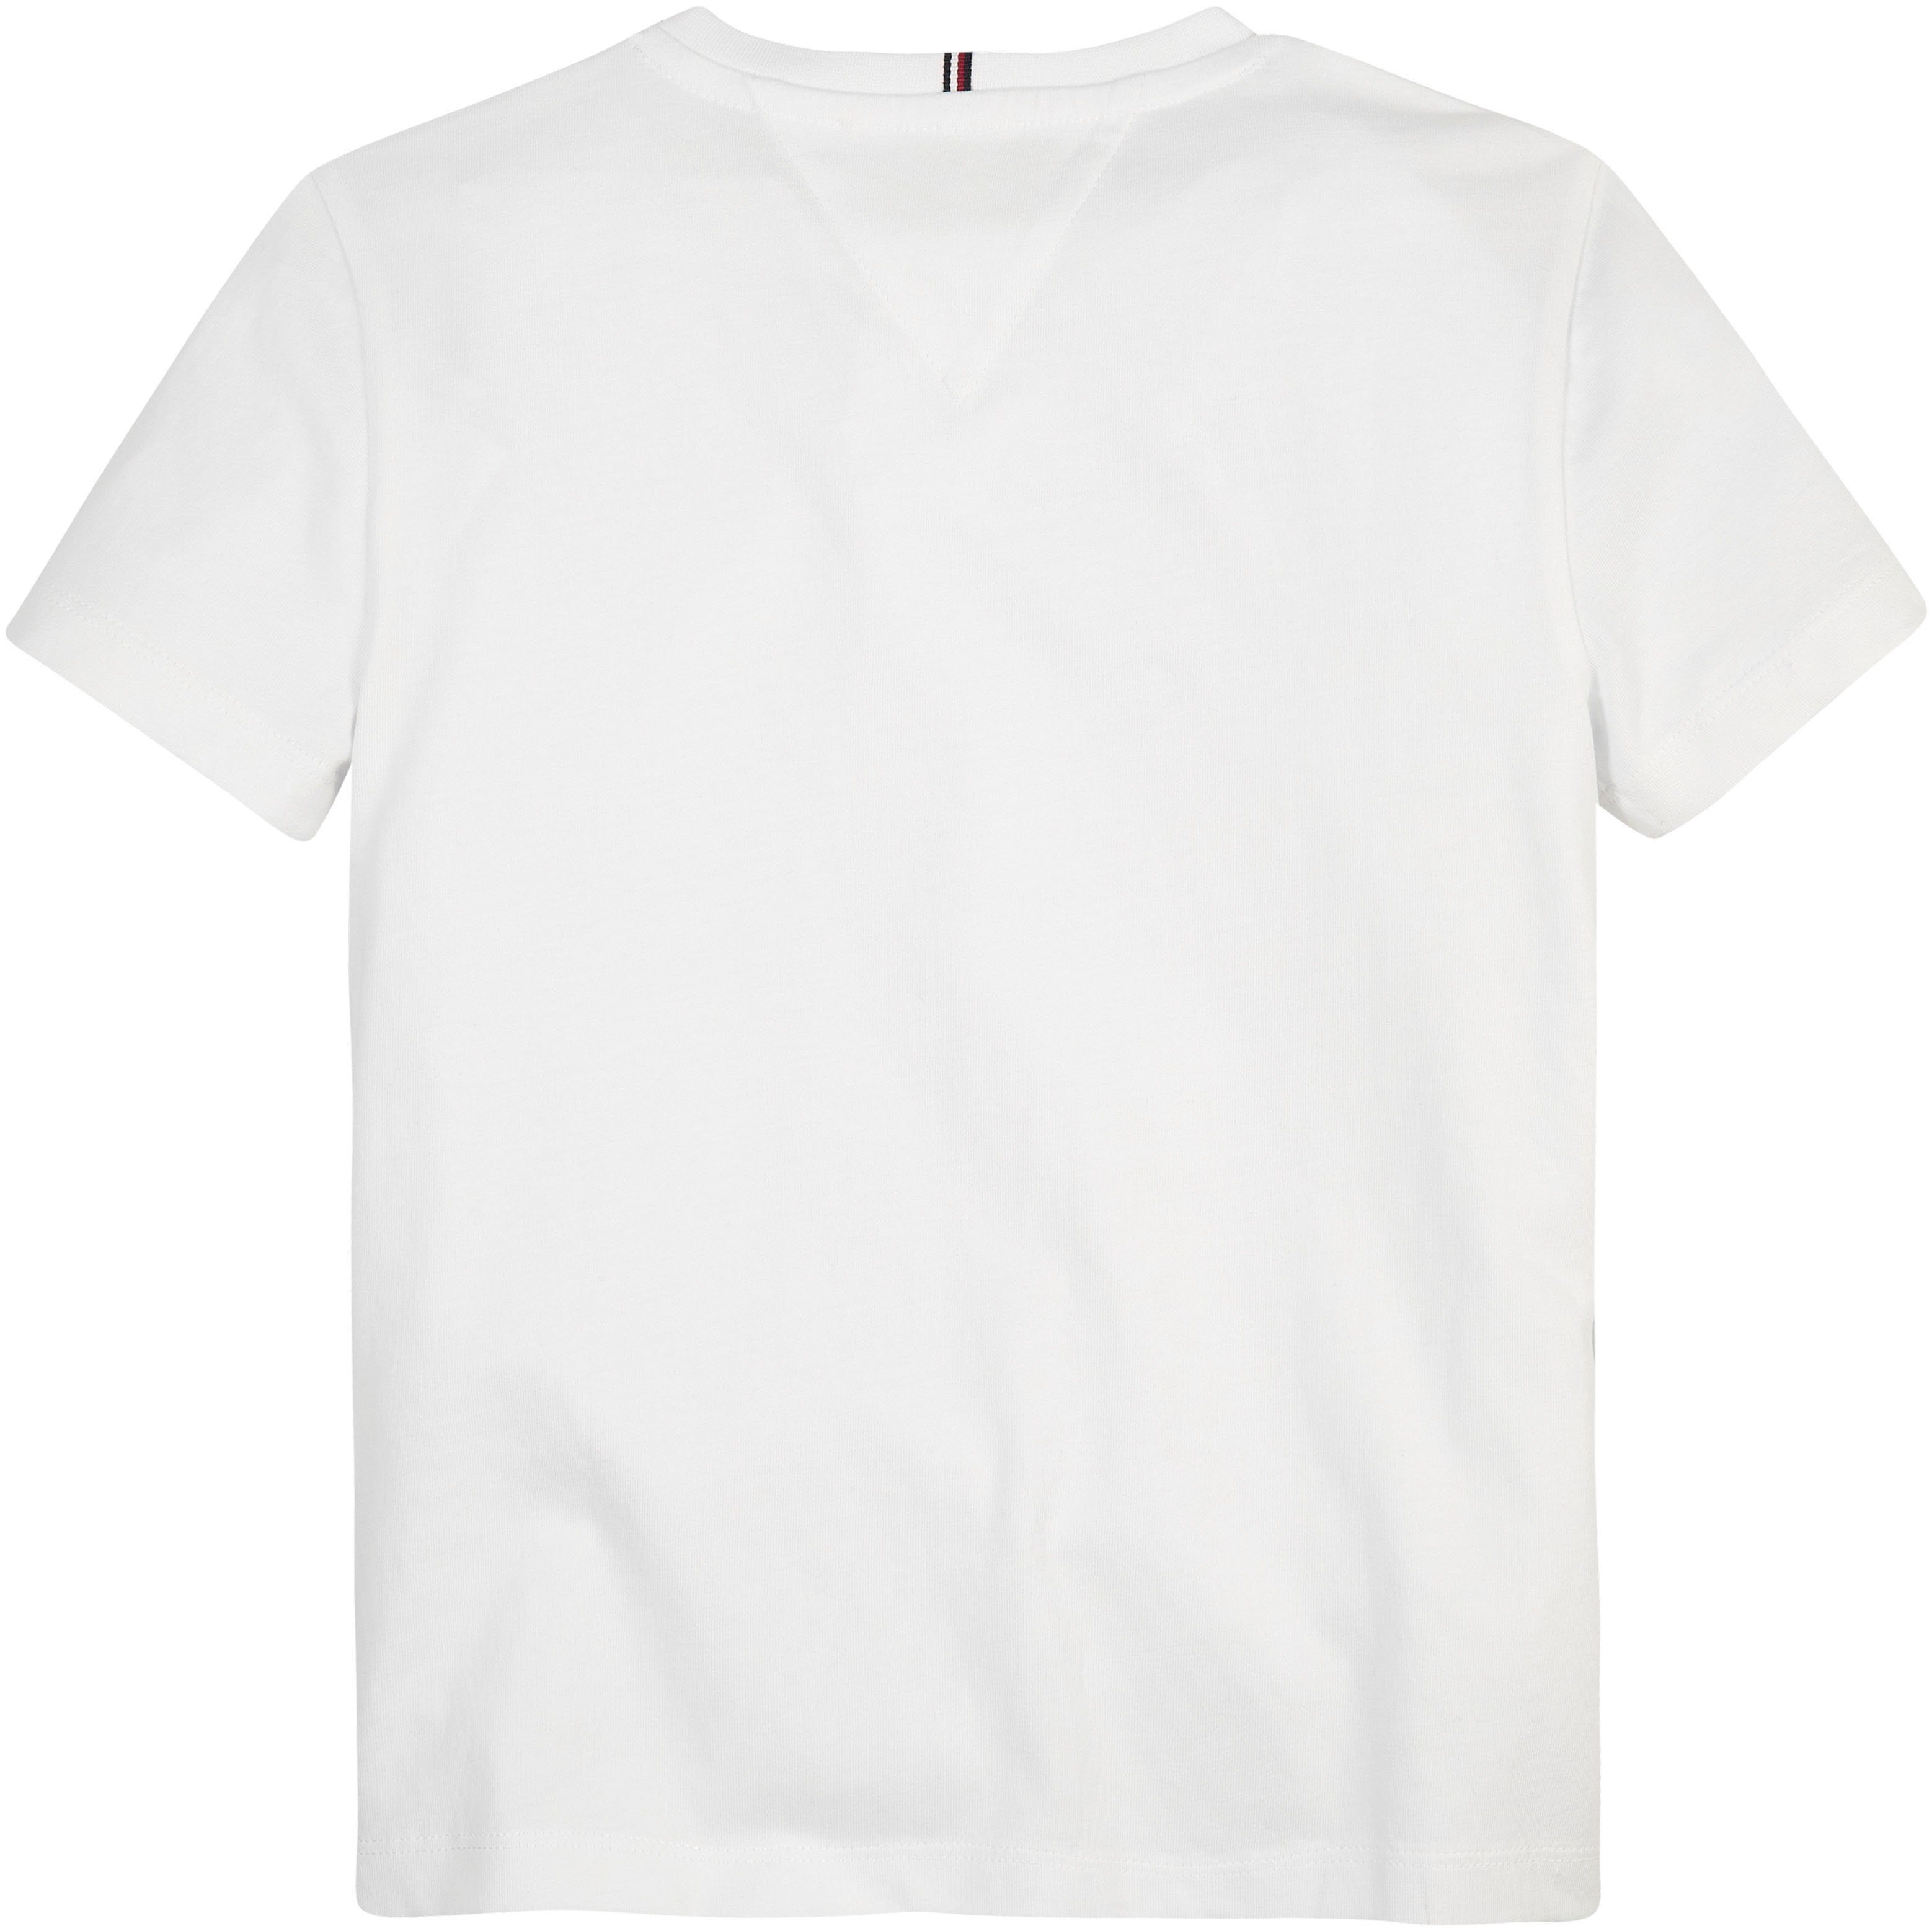 Hilfiger Brust MONOTYPE Hilfiger-Logoschriftzug TEE S/S mit der Tommy modischem White auf T-Shirt